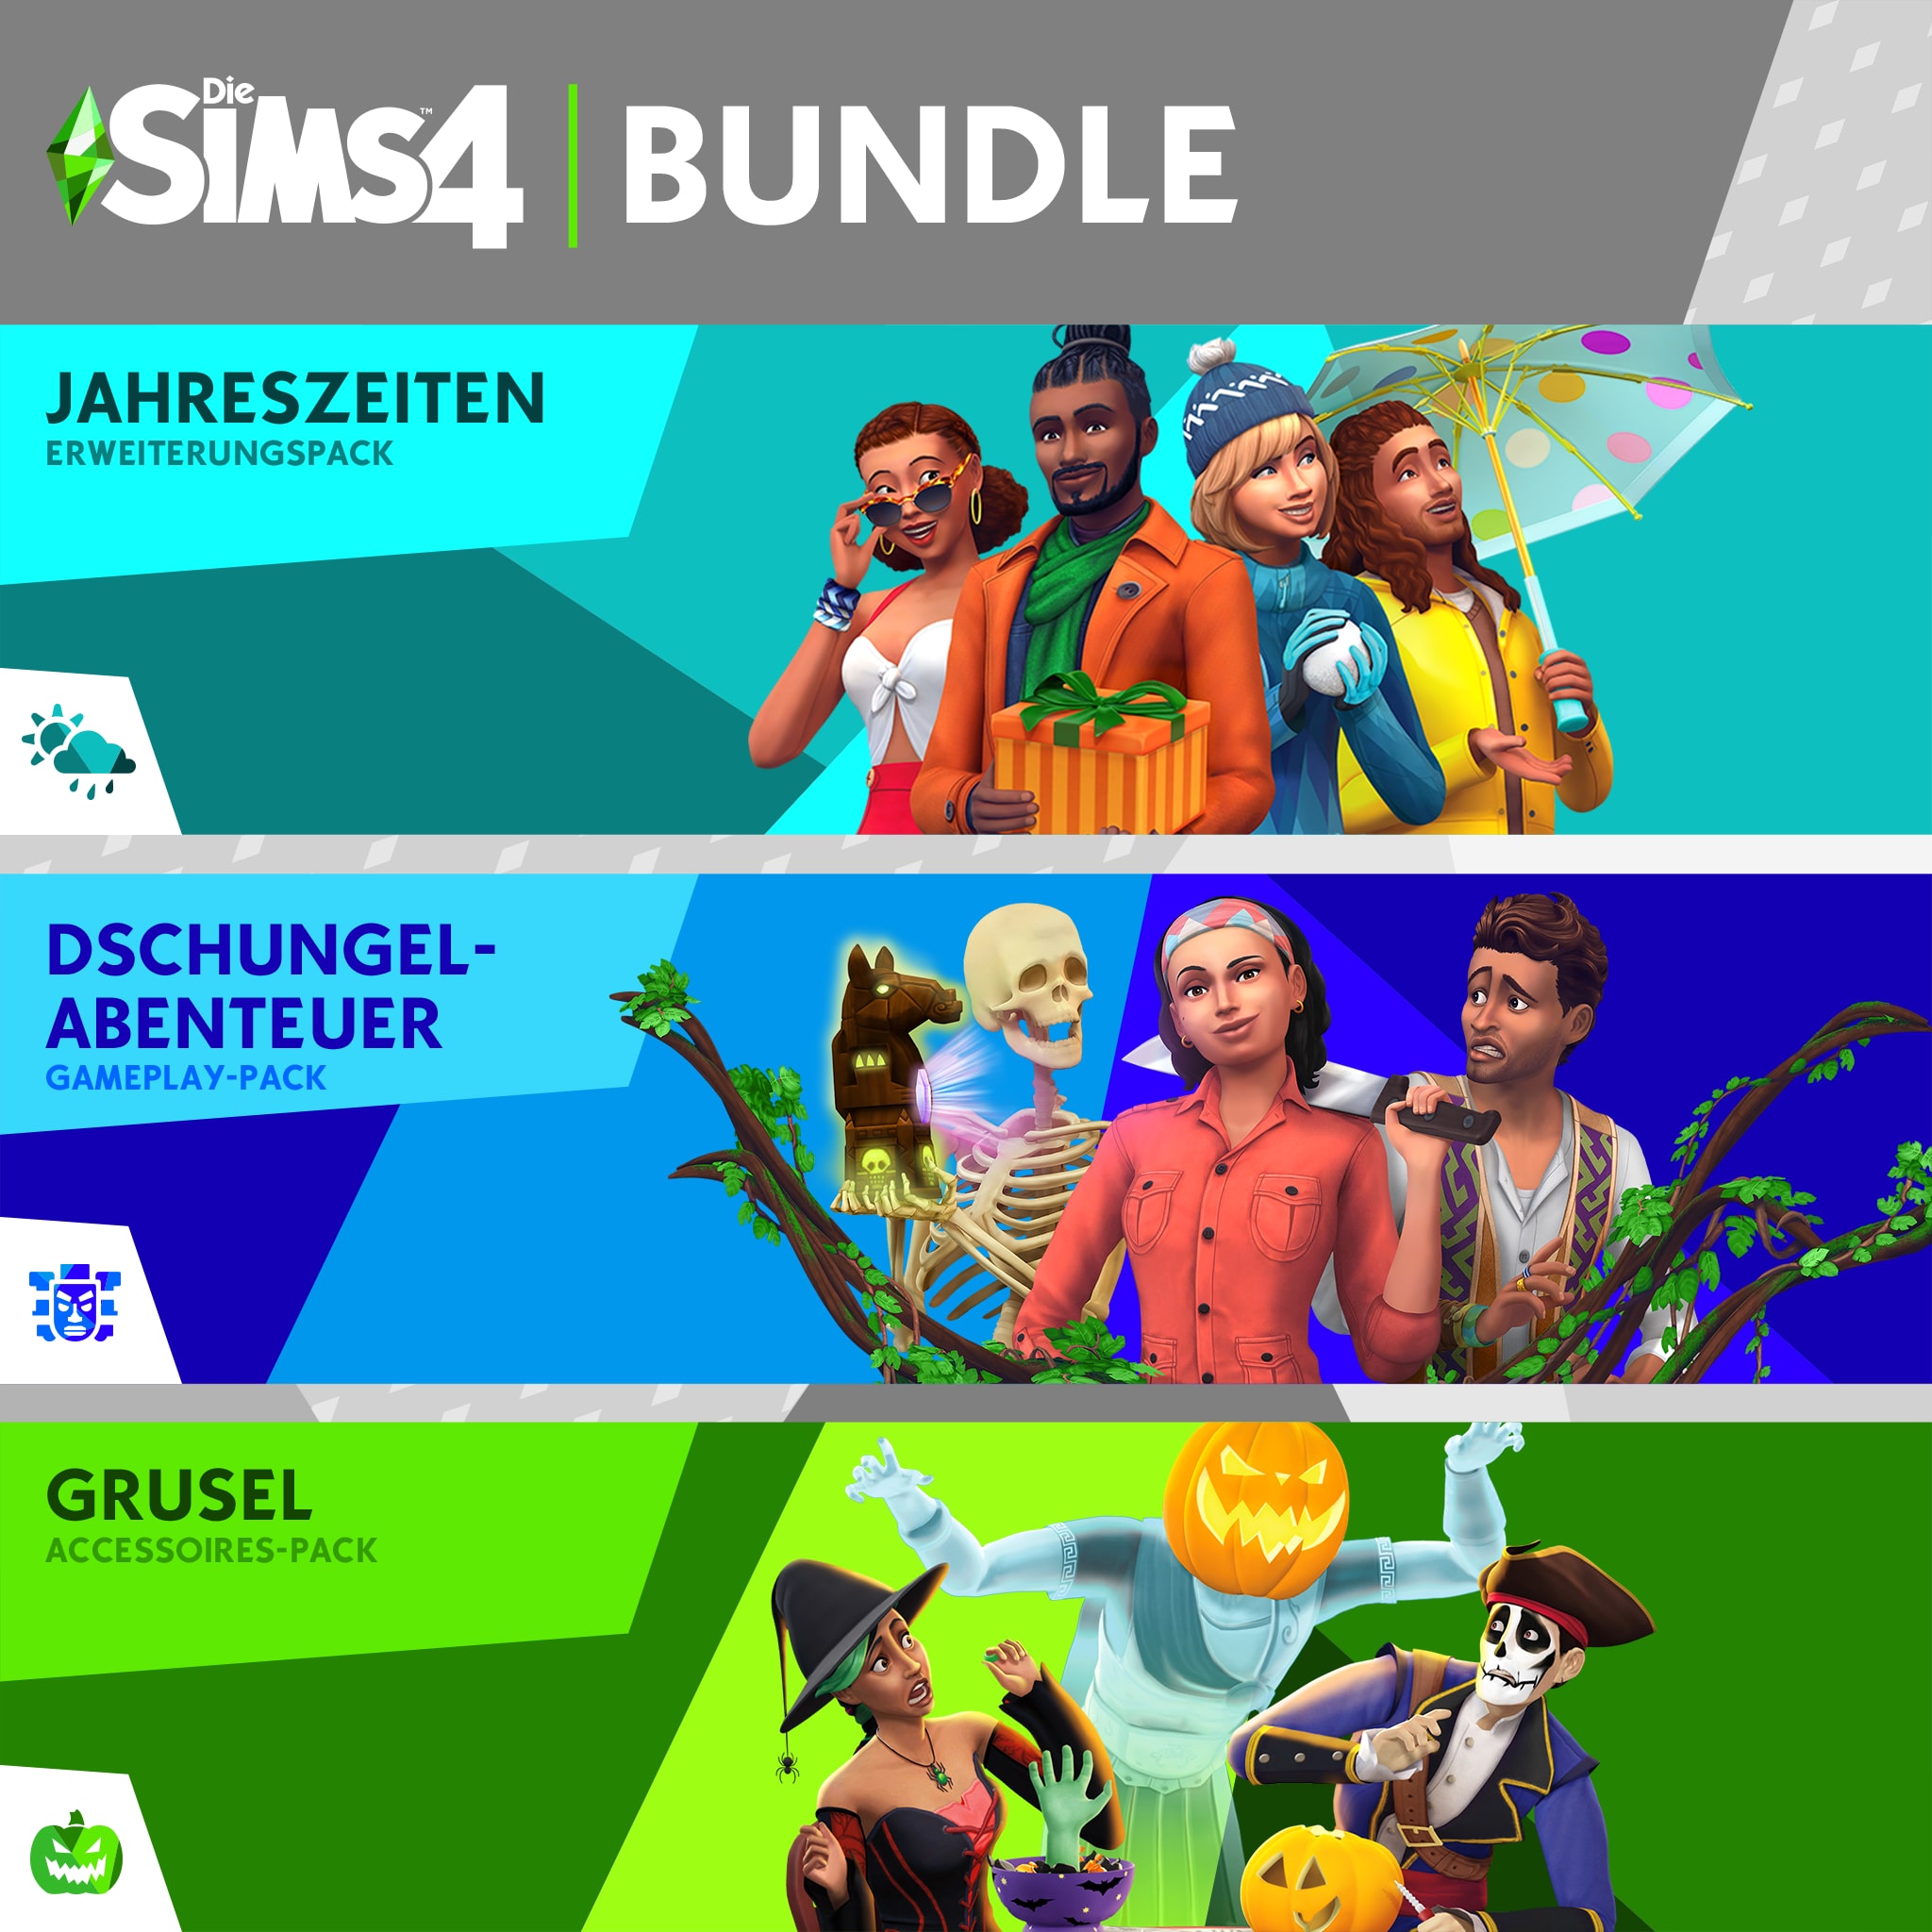 Sims™ - Jahreszeiten, Dschungel, Grusel-Acc.